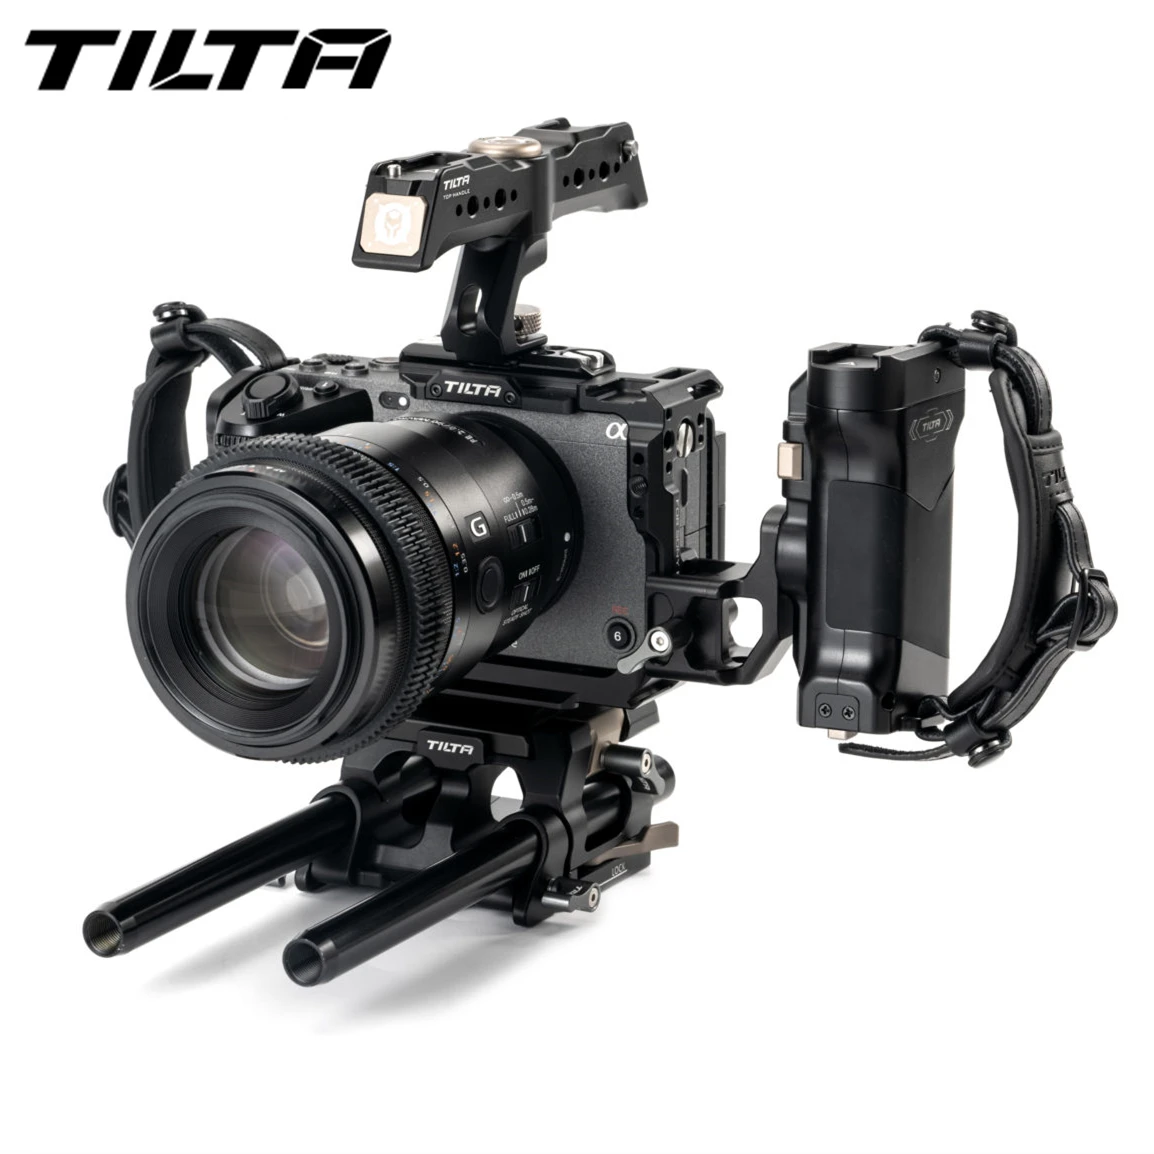 

Tilta FX3 Camera Cage Armor for Sony FX3 camera TA-T13-A-B Dslr rig Kit 15mm Baseplate V mount side focus handle lightweight kit